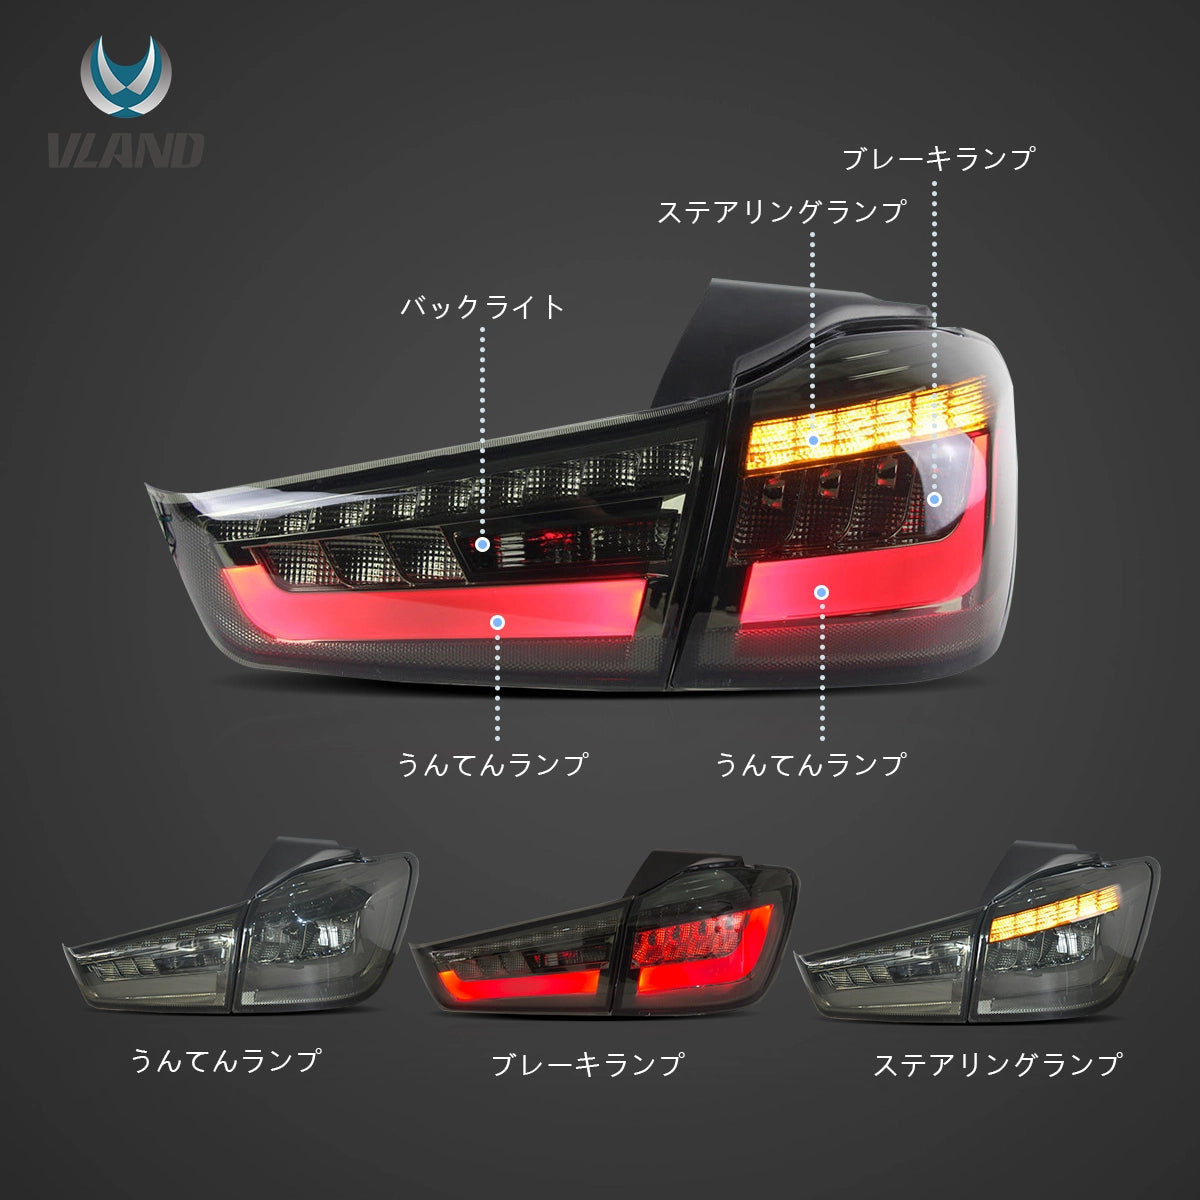 12-22 Mitsubishi ASX Vland LED Tail Lamp (Amber Turn Signal)